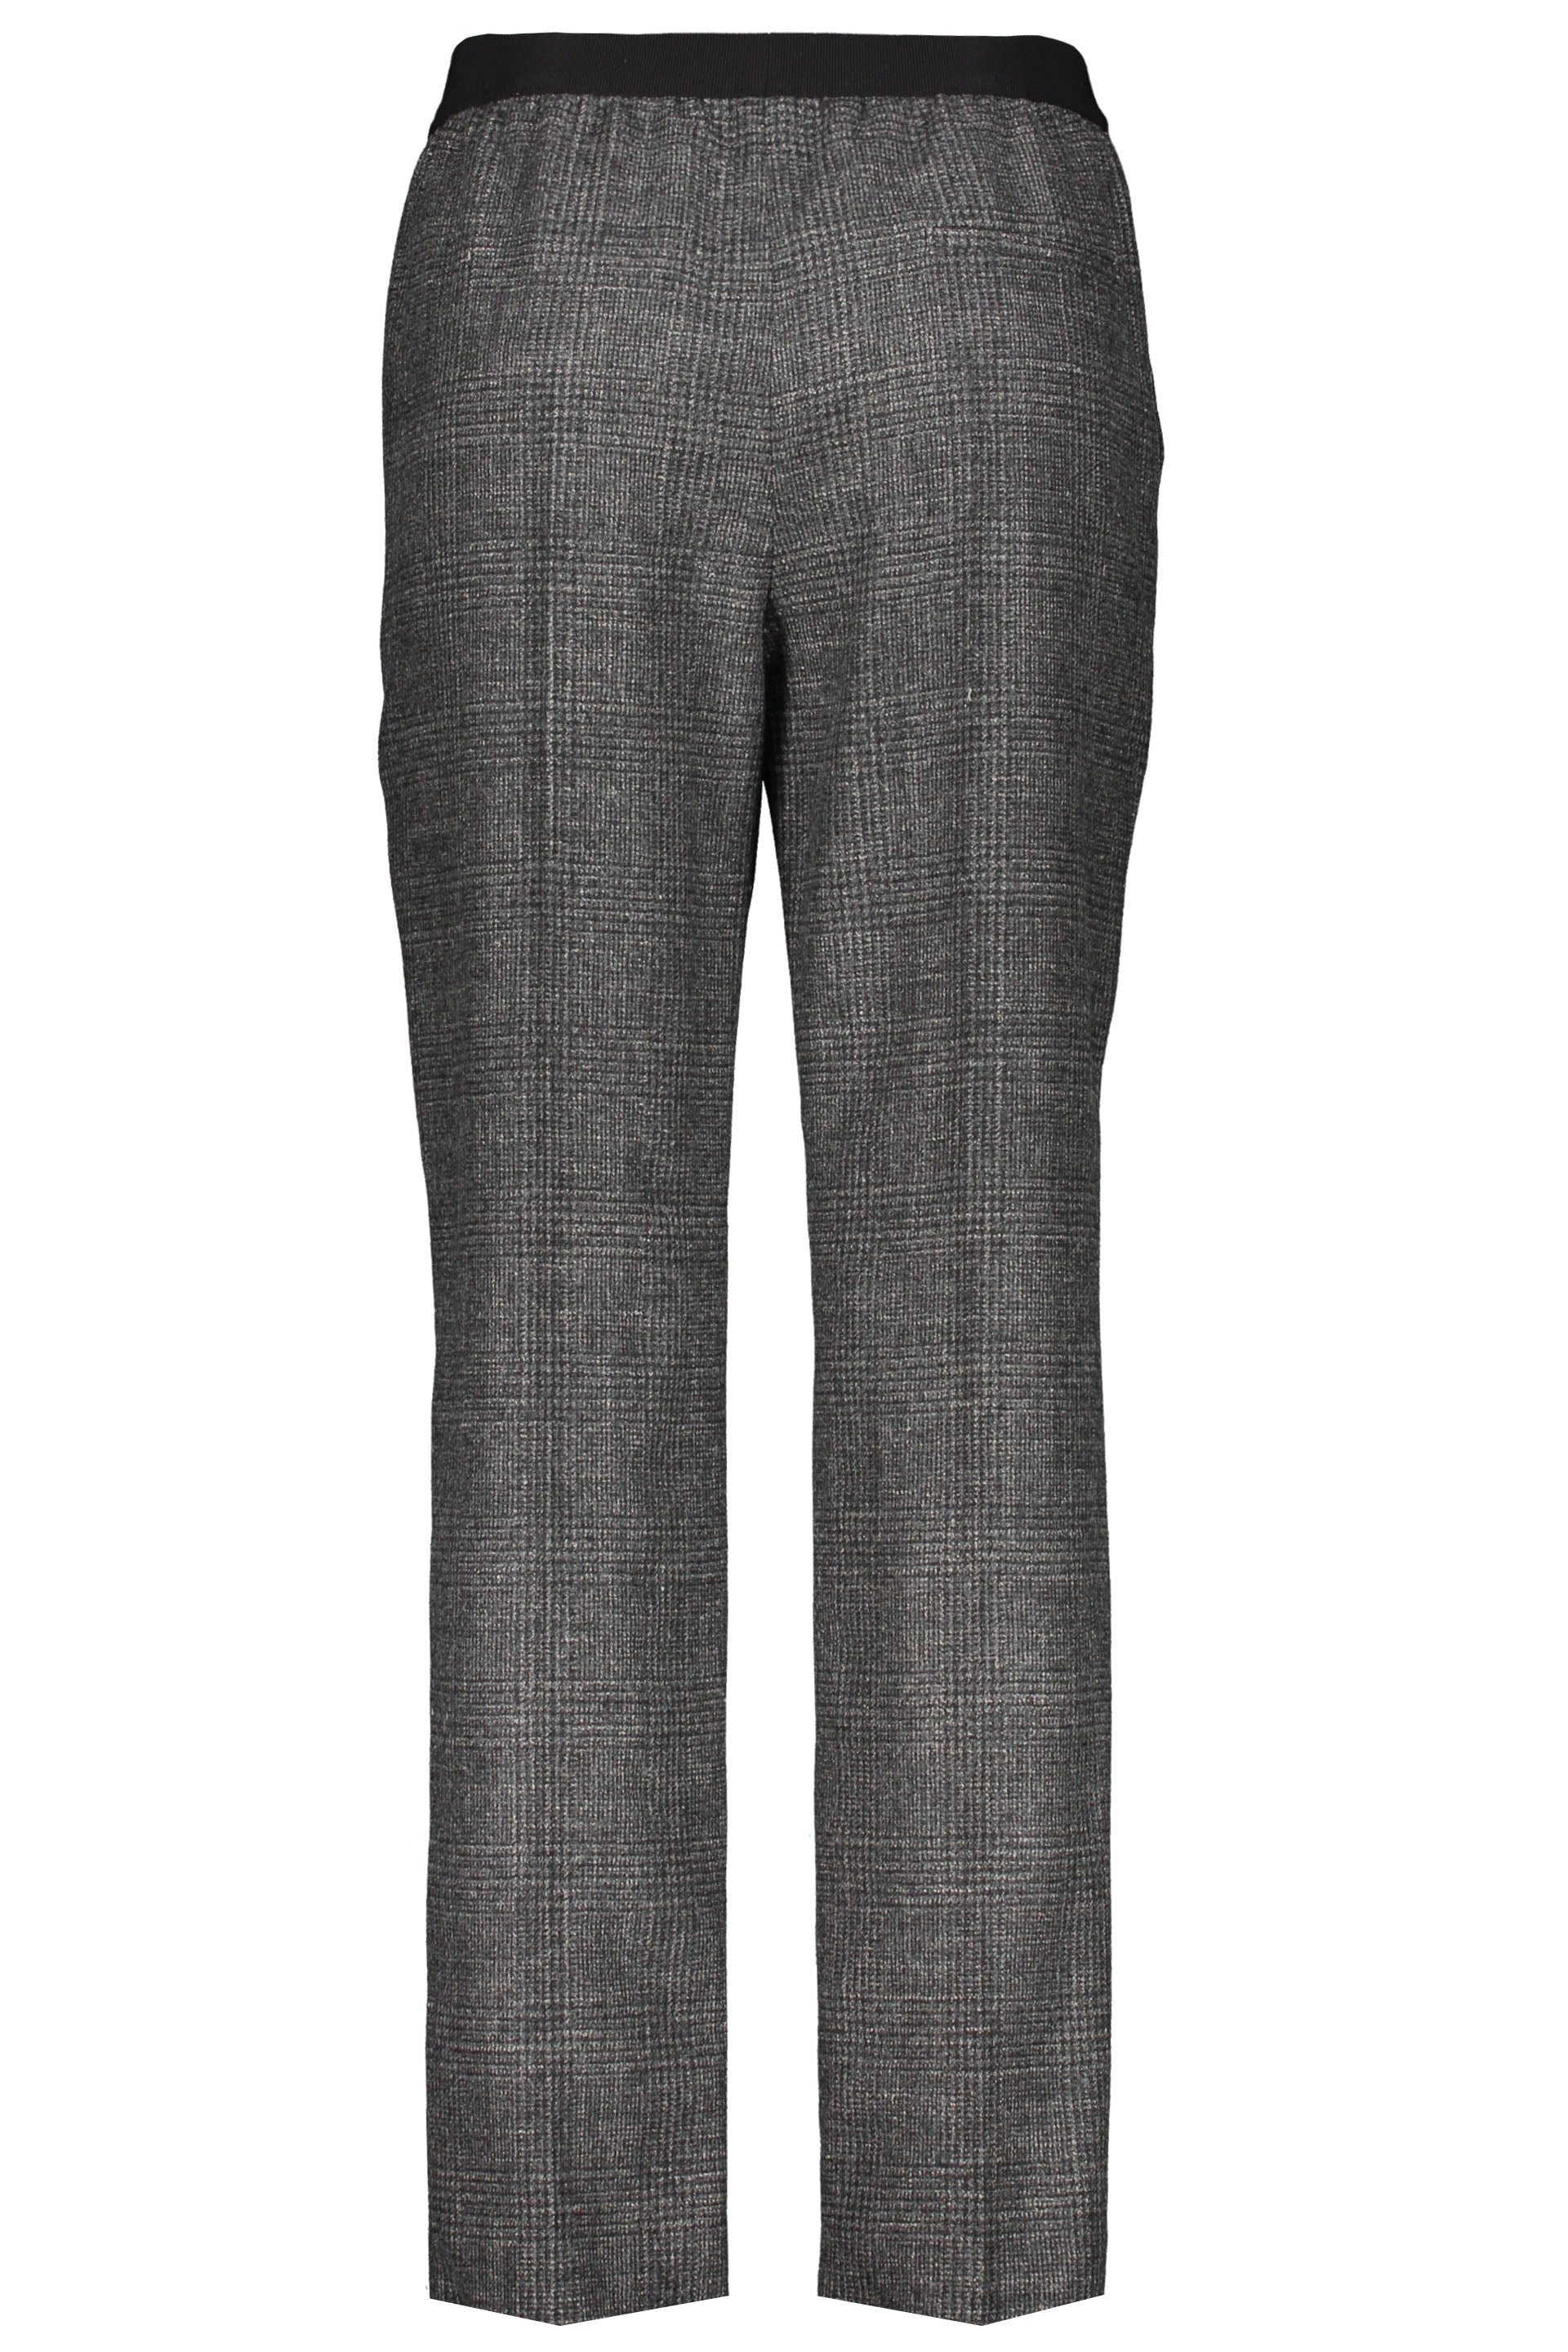 Agnona-OUTLET-SALE-Long-trousers-Hosen-ARCHIVE-COLLECTION-2.jpg